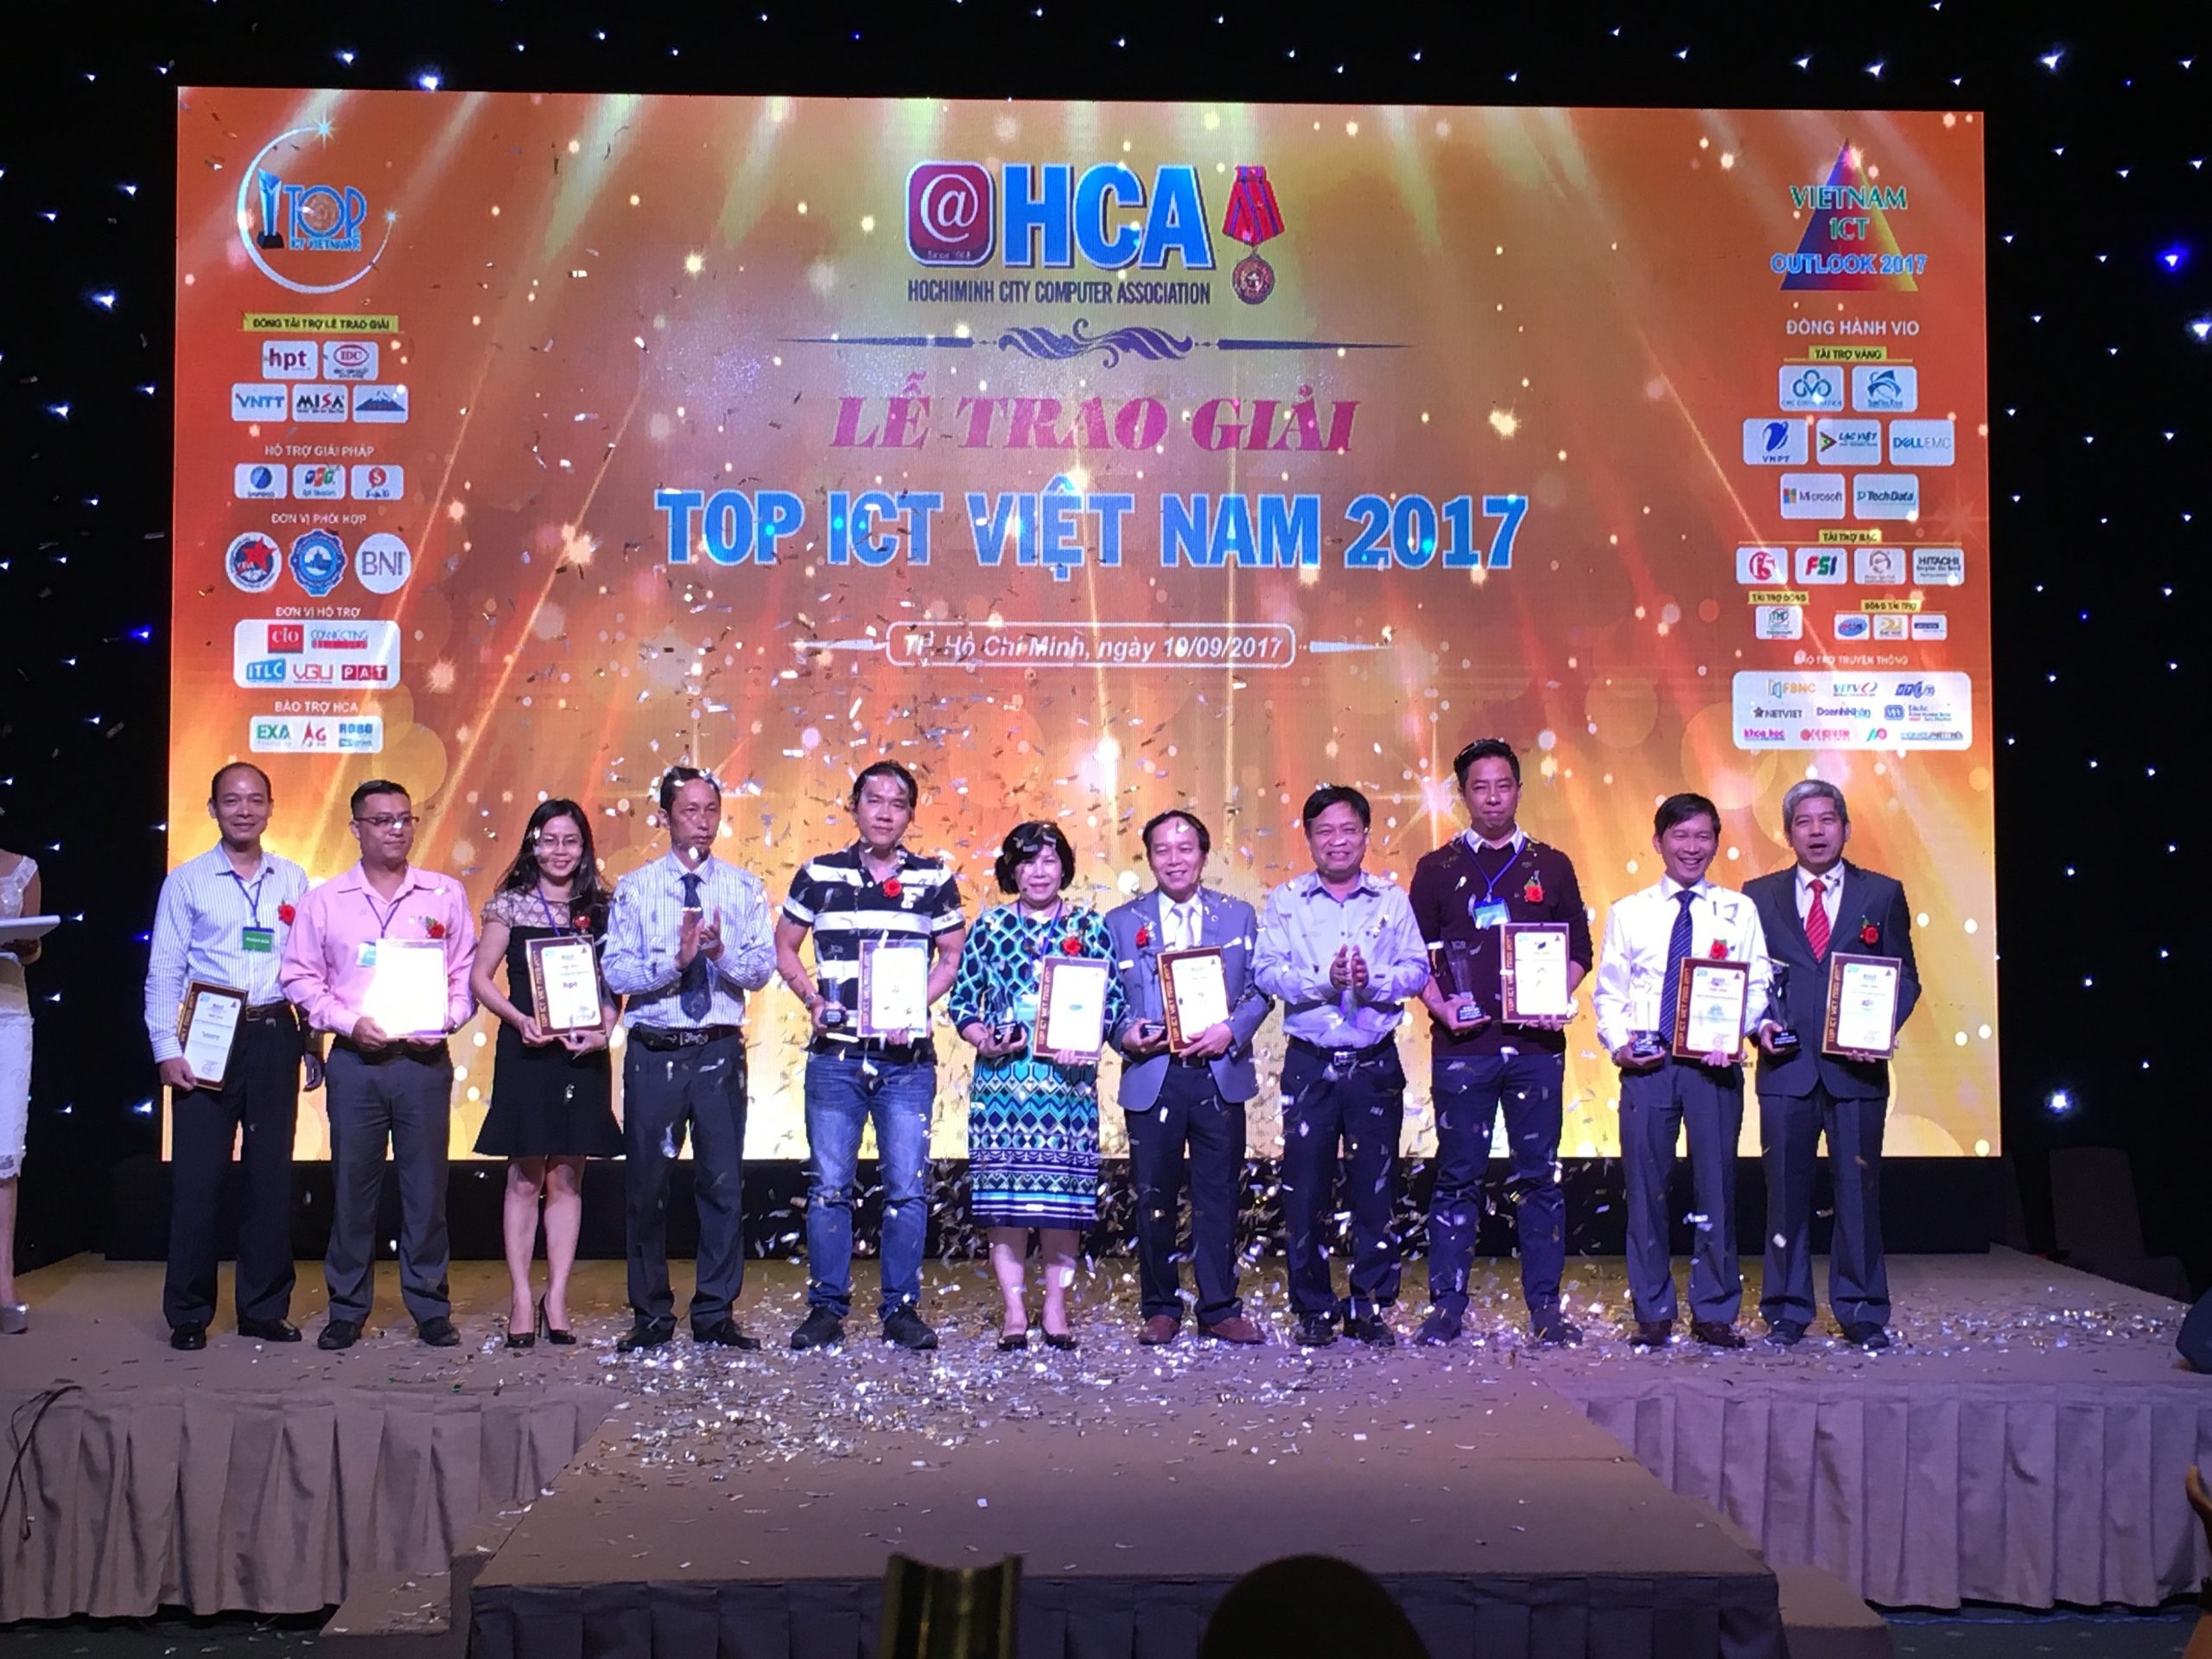 Hệ thống quản lý khách sạn thông minh – FPT.iHotel đạt Giải thưởng TOP ICT Việt Nam 2017, hạng mục Top sản phẩm Công nghệ thông tin, Viễn thông triển vọng – có tính sáng tạo